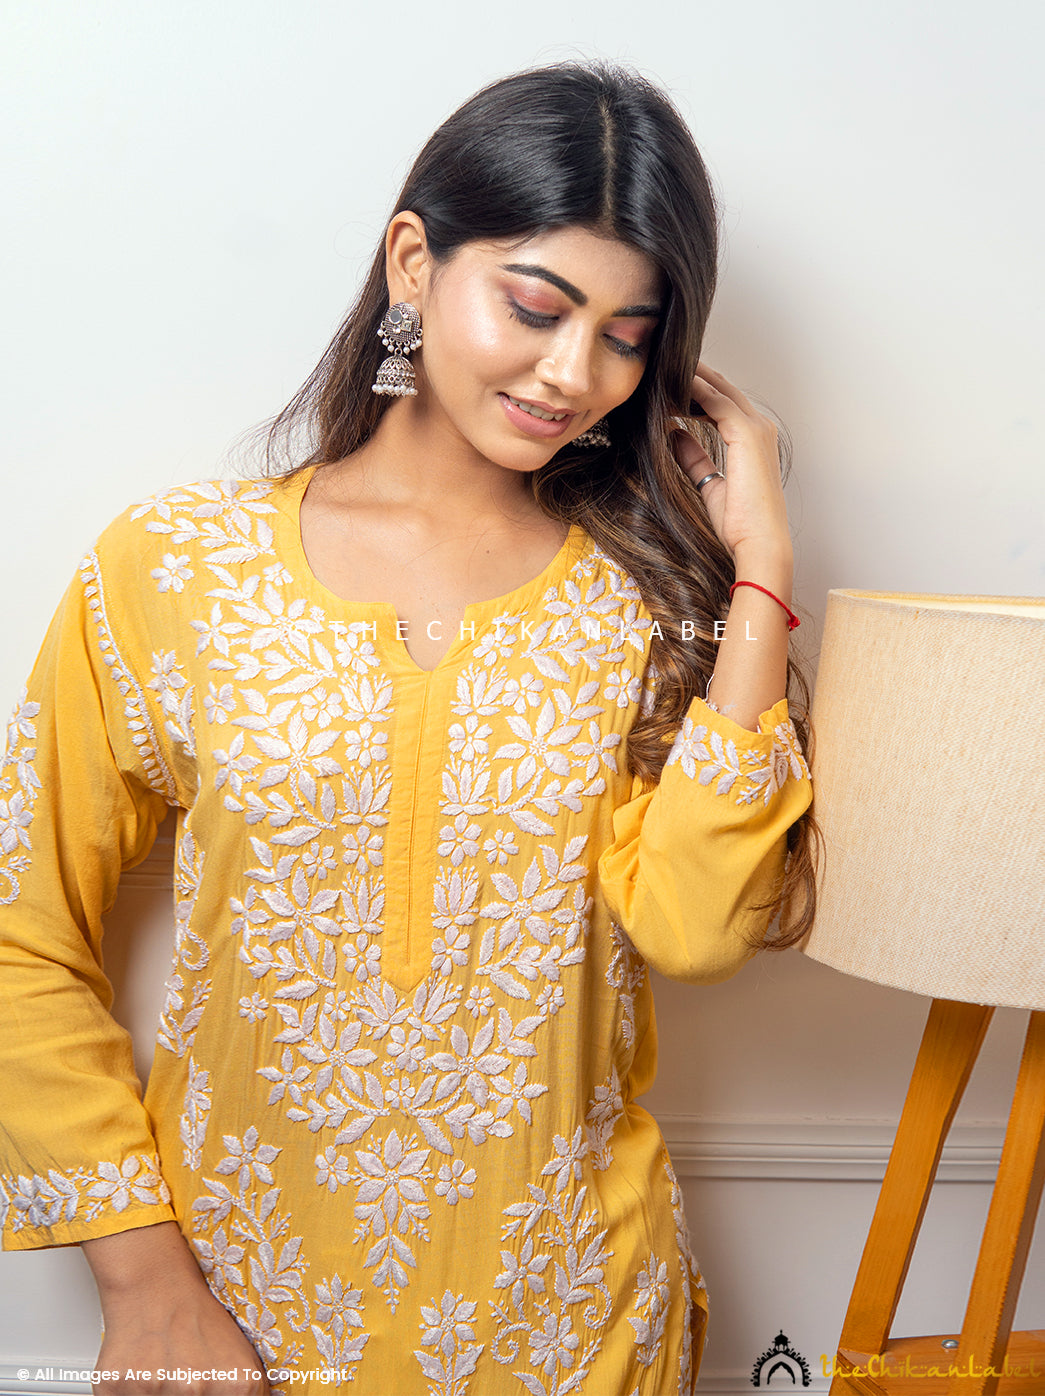 Yellow Eira Modal Chikankari Straight Kurti ,Chikankari Straight Kurti in Modal Fabric For Woman